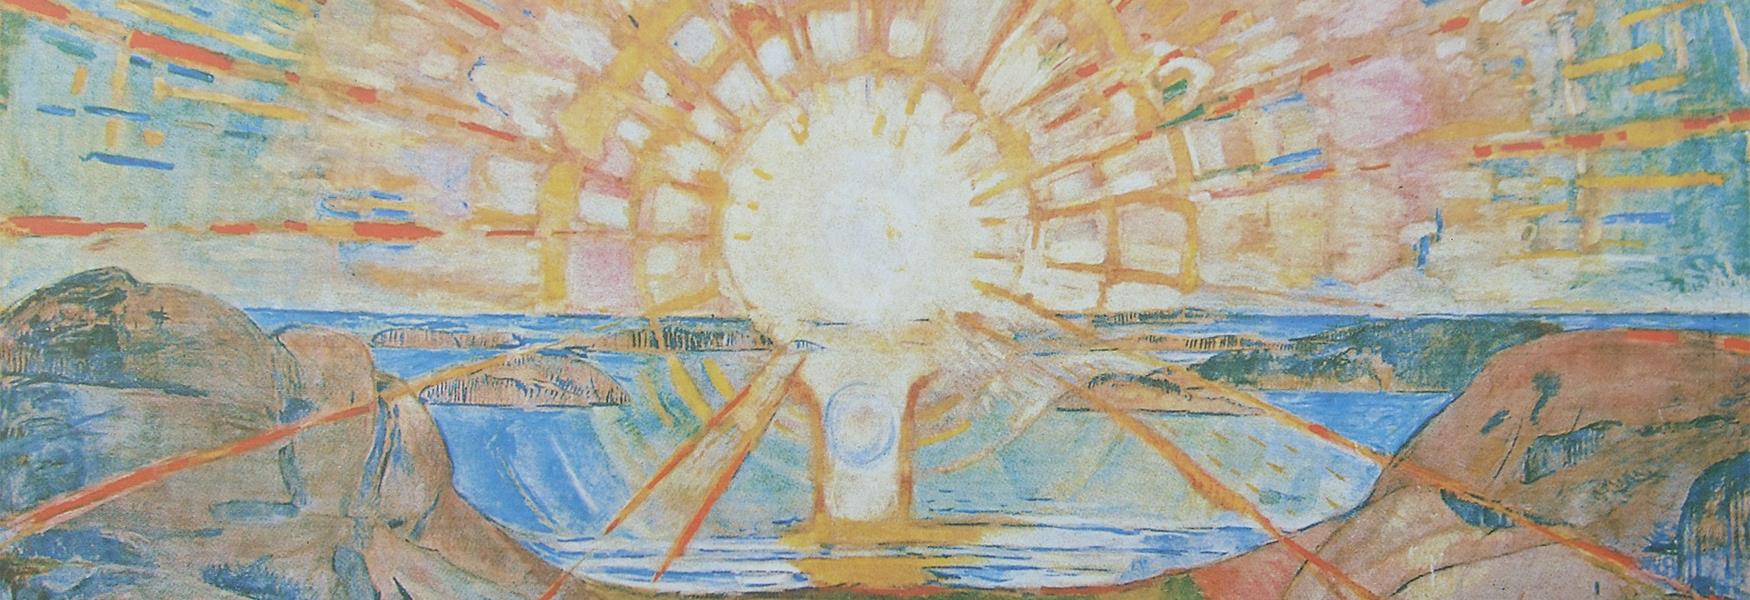 Maleriet Solen av Edvard Munch